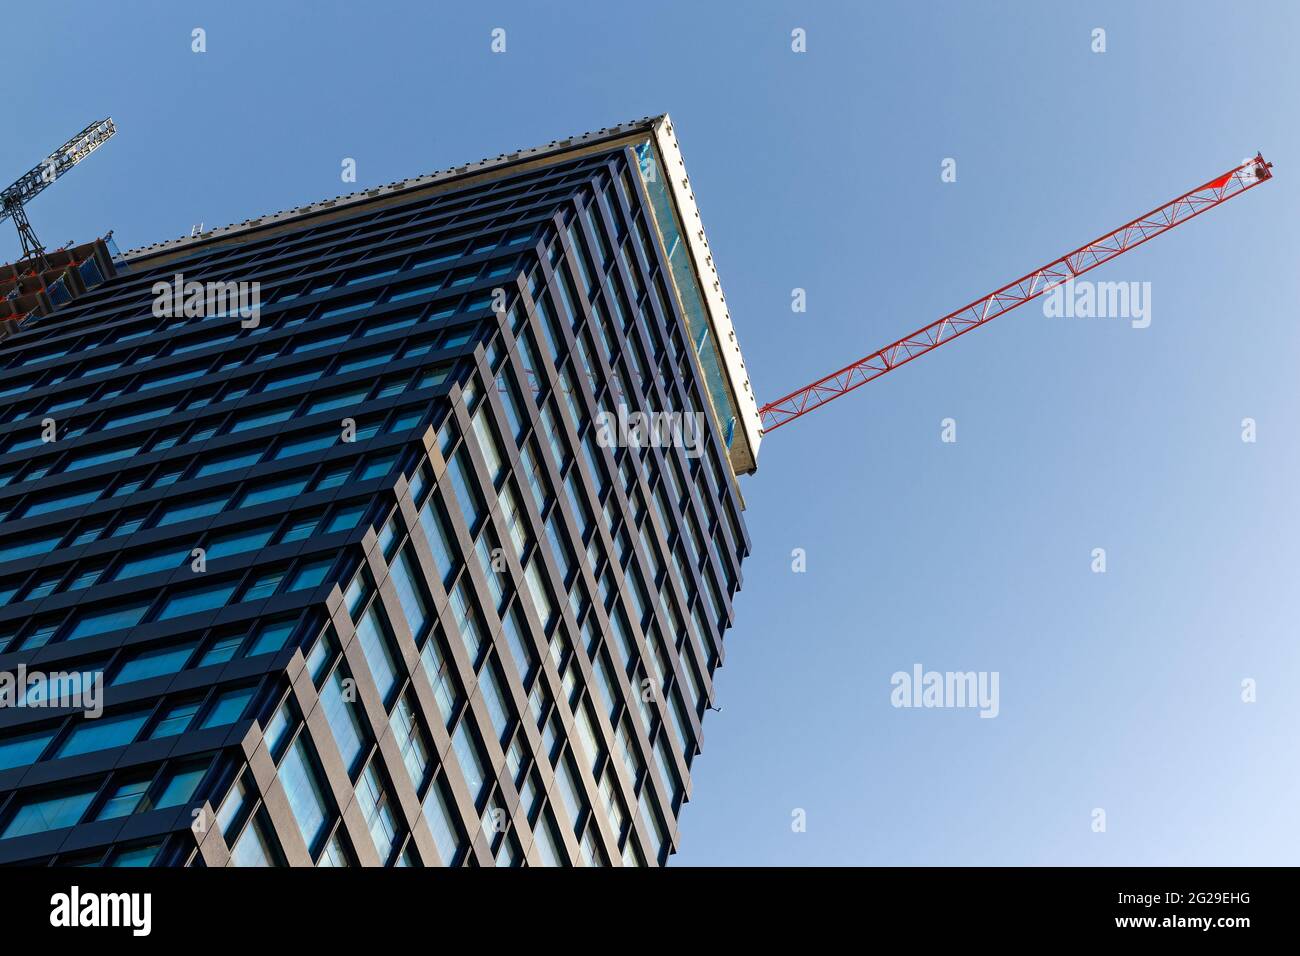 bâle suisse, 24 avril. 2021: grand gratte-ciel devant le ciel bleu avec grue de construction rouge, dans les grandes villes beaucoup de nouveaux bâtiments sont construits, par jour Banque D'Images